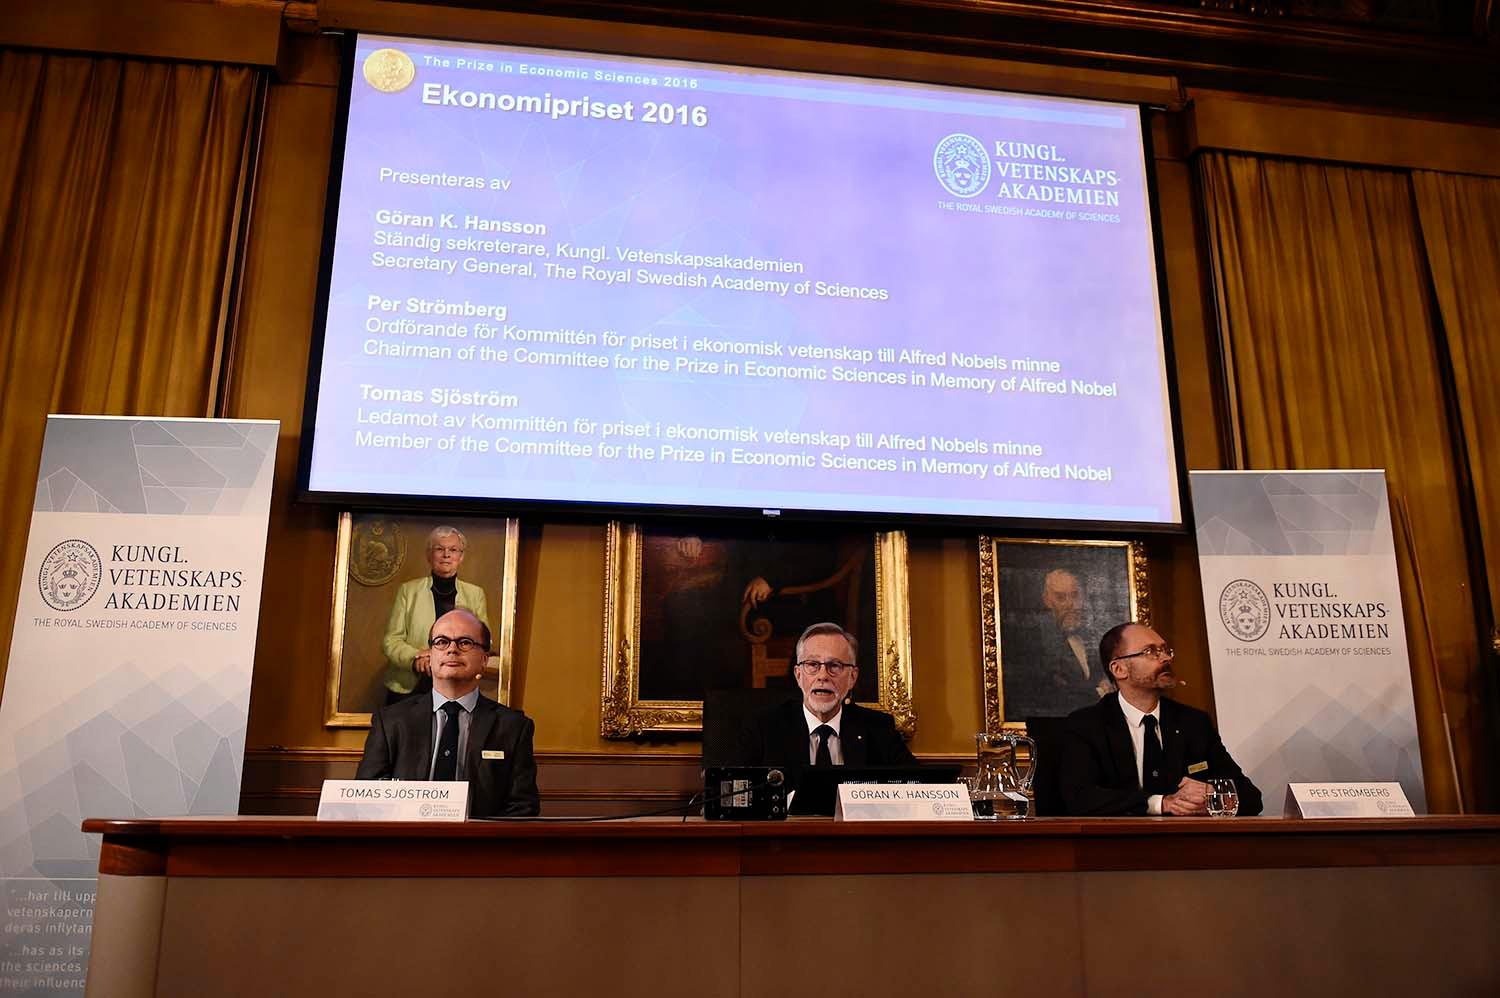 Oliver Hart och Bengt Holmström får årets ekonomipris till Alfred Nobels minne.